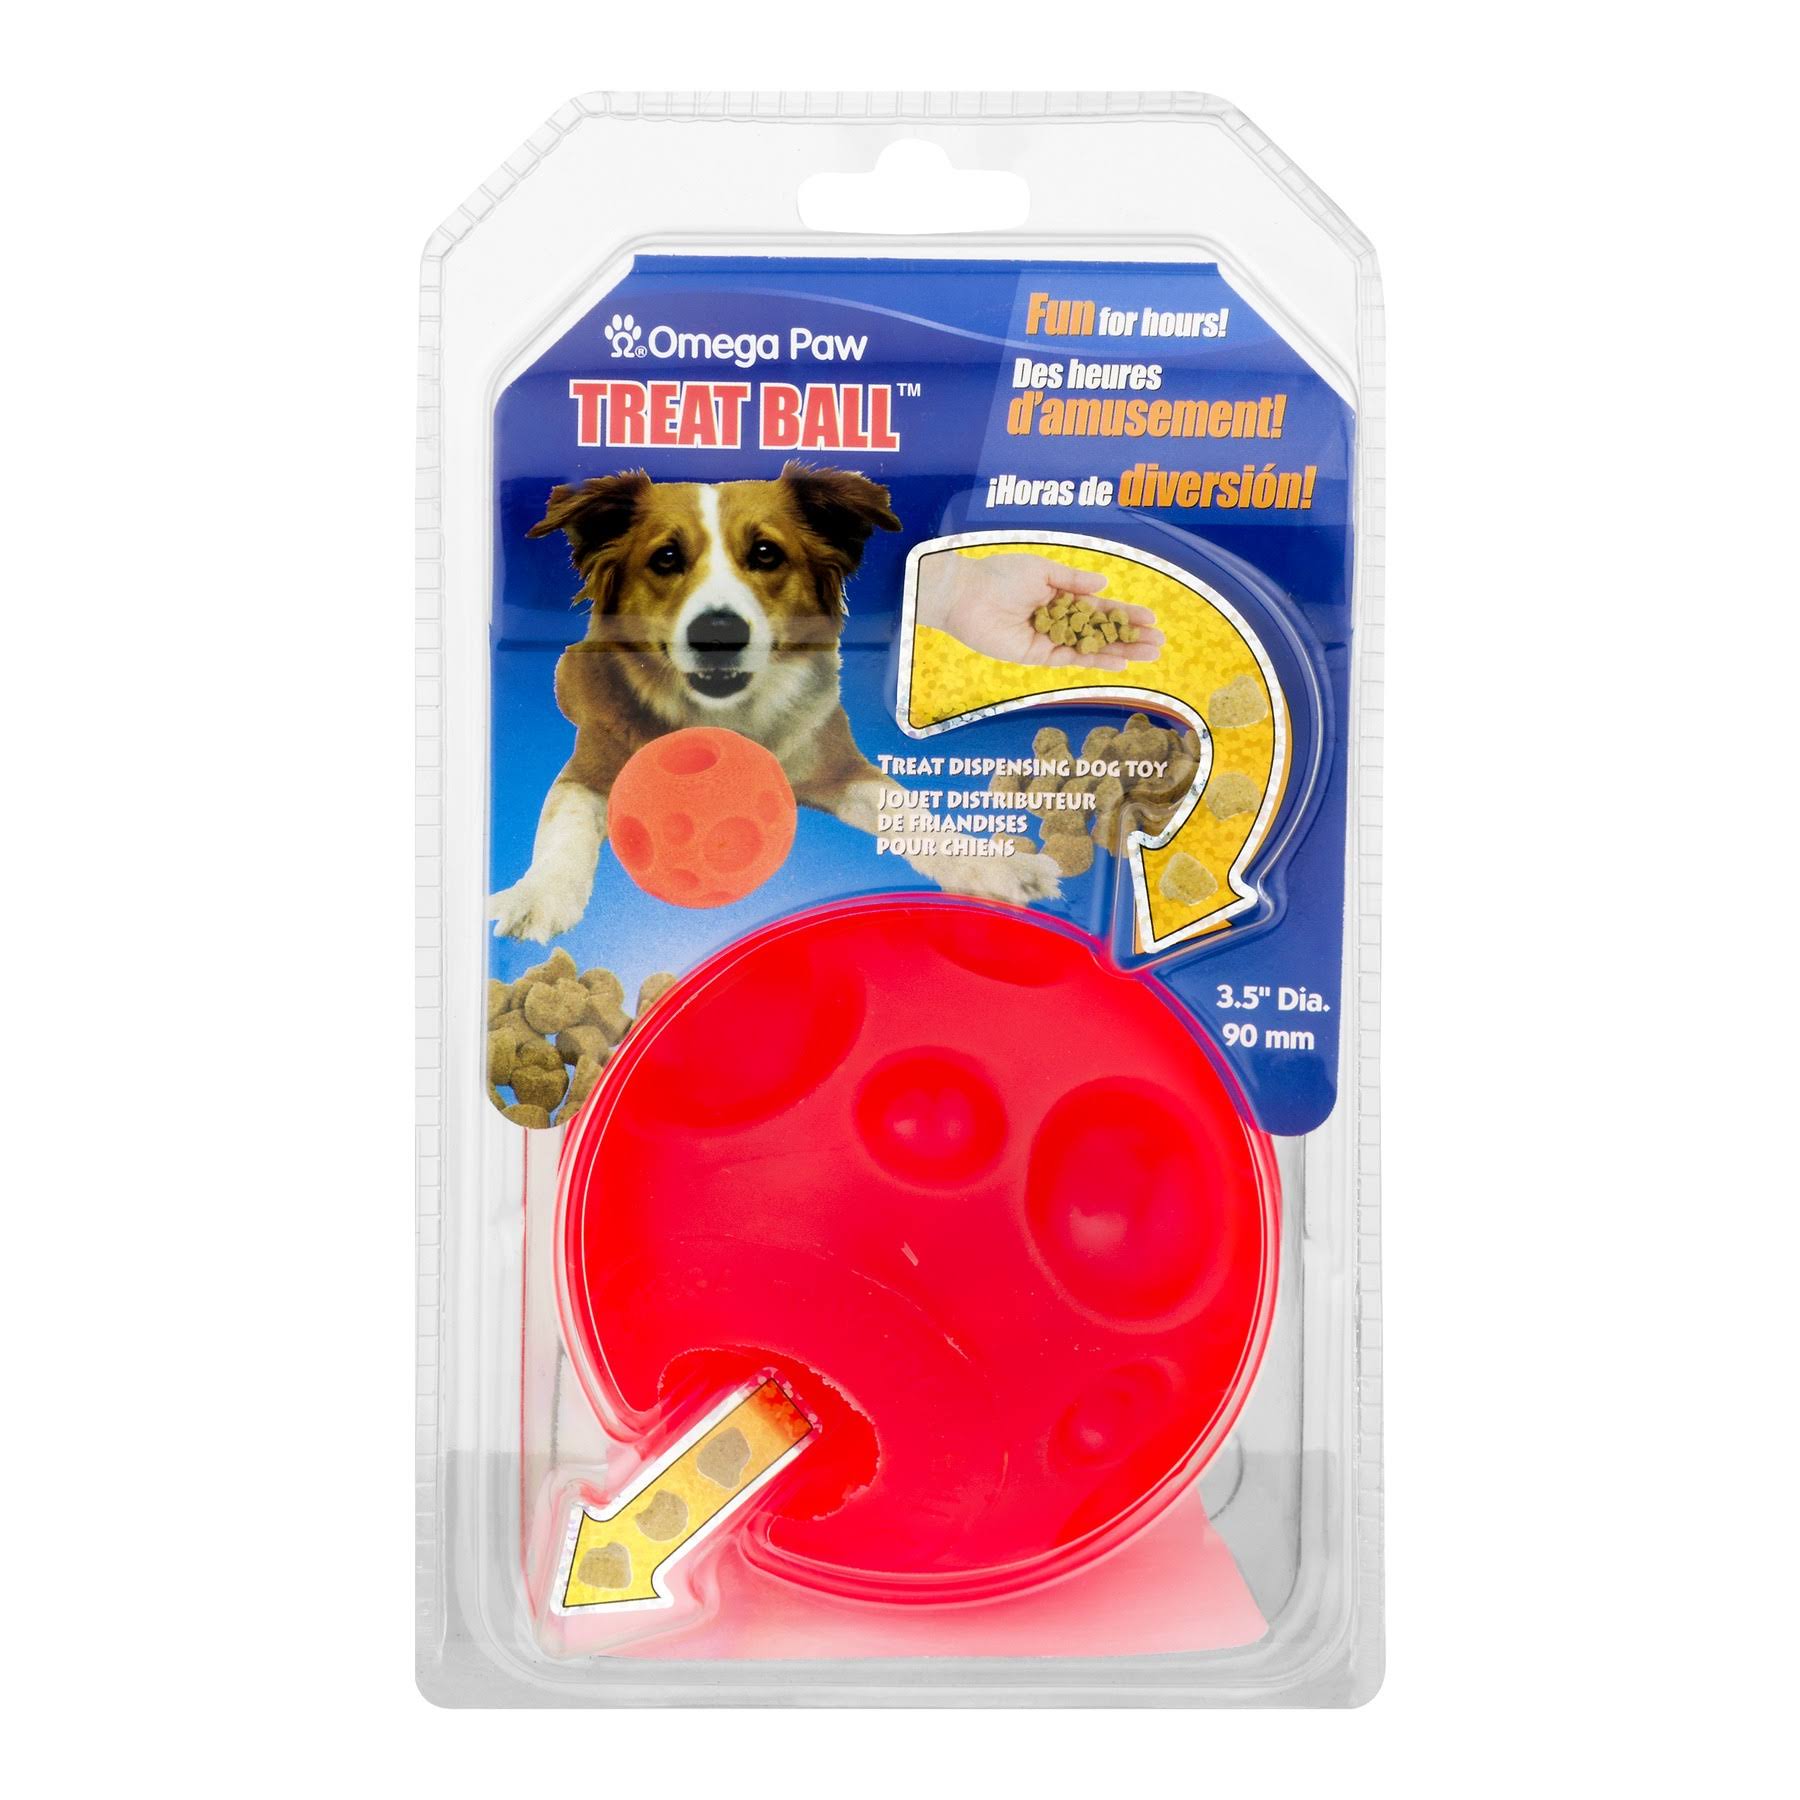 Omega Paw Treat Ball Dog Toy - Orange, 90m